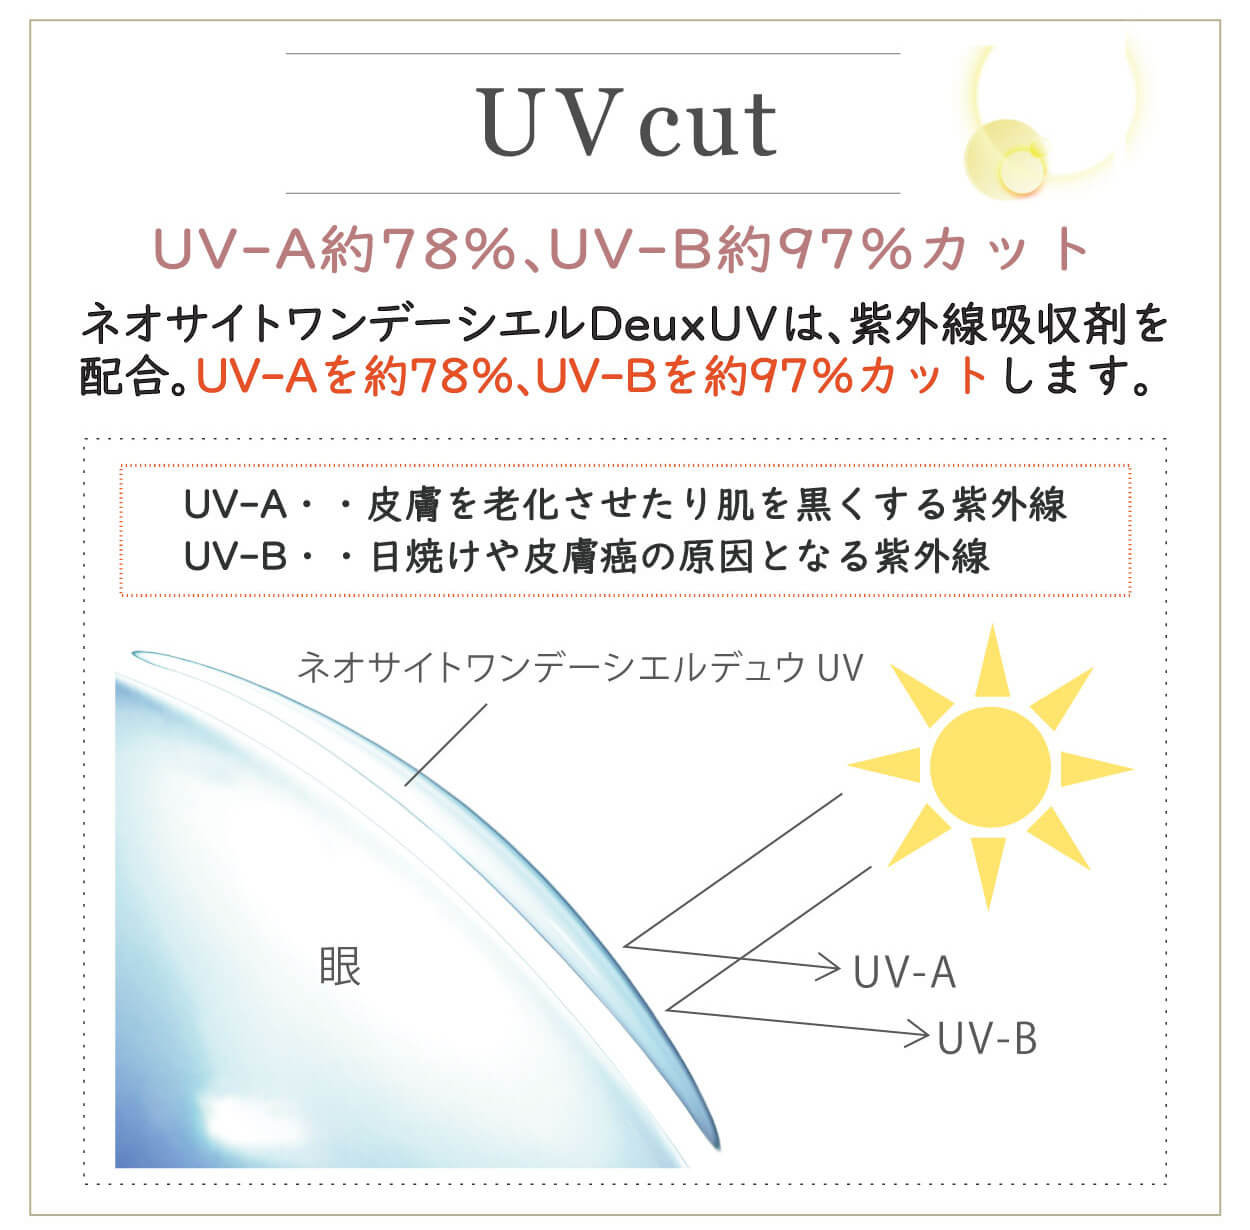 小松菜奈イメージモデルカラコン Neo Sight one day Ciel Deux UV -ネオサイトワンデーシエルデュウUV｜UV cut UV-A約78%、UV-B約97%カット ネオサイトワンデーシエルDeuxUVは、紫外線吸収剤を配合、UV-Aを約78%、UV-Bを約97%カットします。 UV-A…皮膚を老化させたり肌を黒くする紫外線 UB-B…日焼けや皮膚がんの原因となる紫外線 ネオサイトワンデーシエルデュウUV 眼 UV-A UV-B